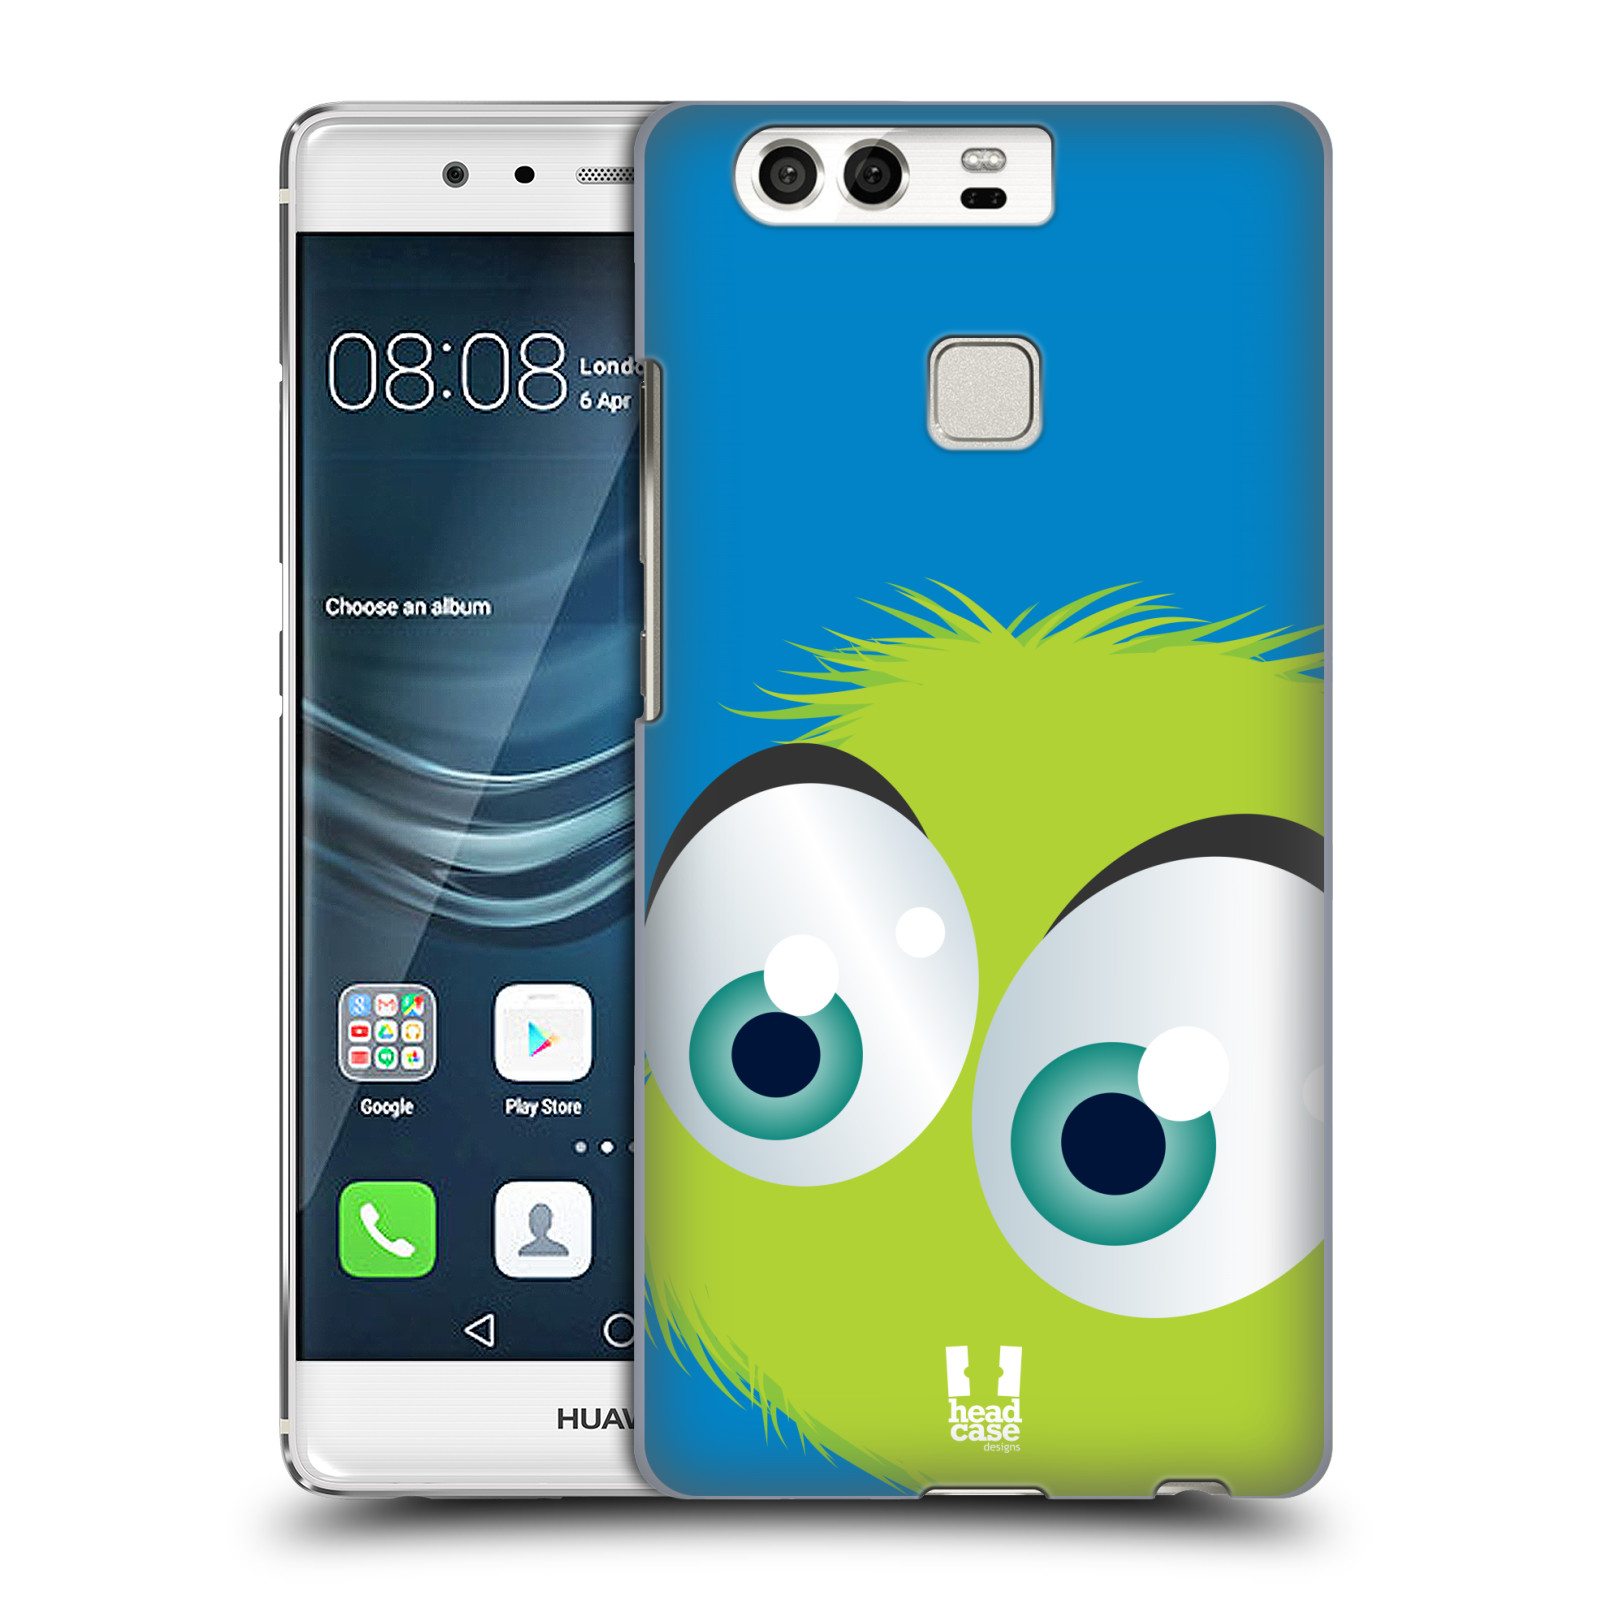 HEAD CASE plastový obal na mobil Huawei P9 / P9 DUAL SIM vzor Barevný chlupatý smajlík ZELENÁ modré pozadí